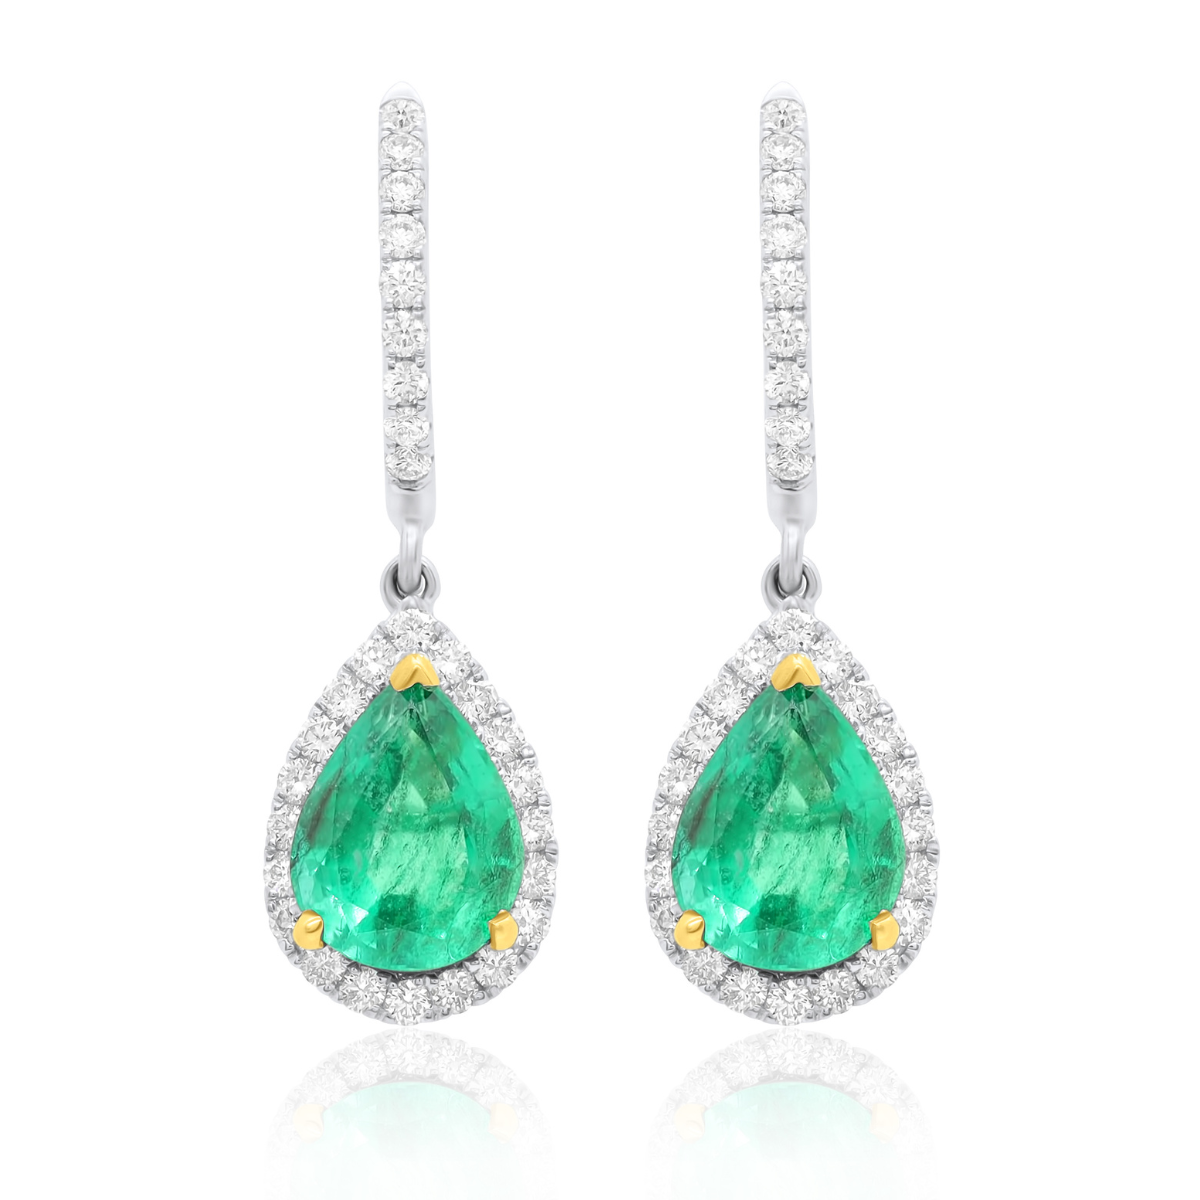 2 carat emerald cut diamond earrings